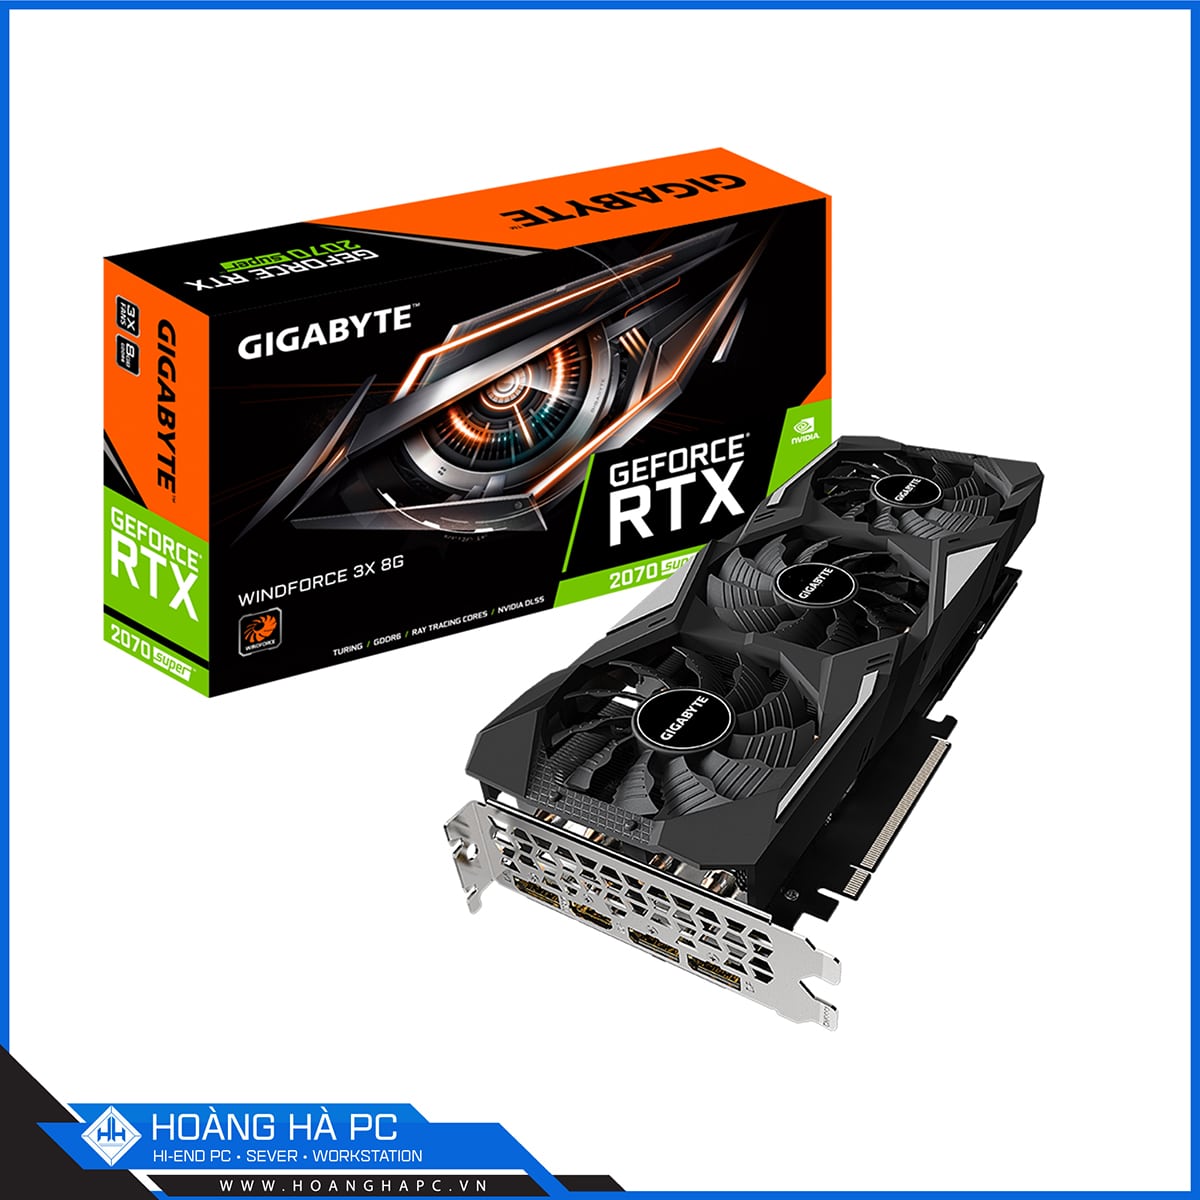 VGA GIGABYTE GeForce RTX 2070 SUPER WINDFORCE 3X 8G (8GB GDDR6, 256-bit, HDMI +DP, 1x8-pin, 1x6-pin)